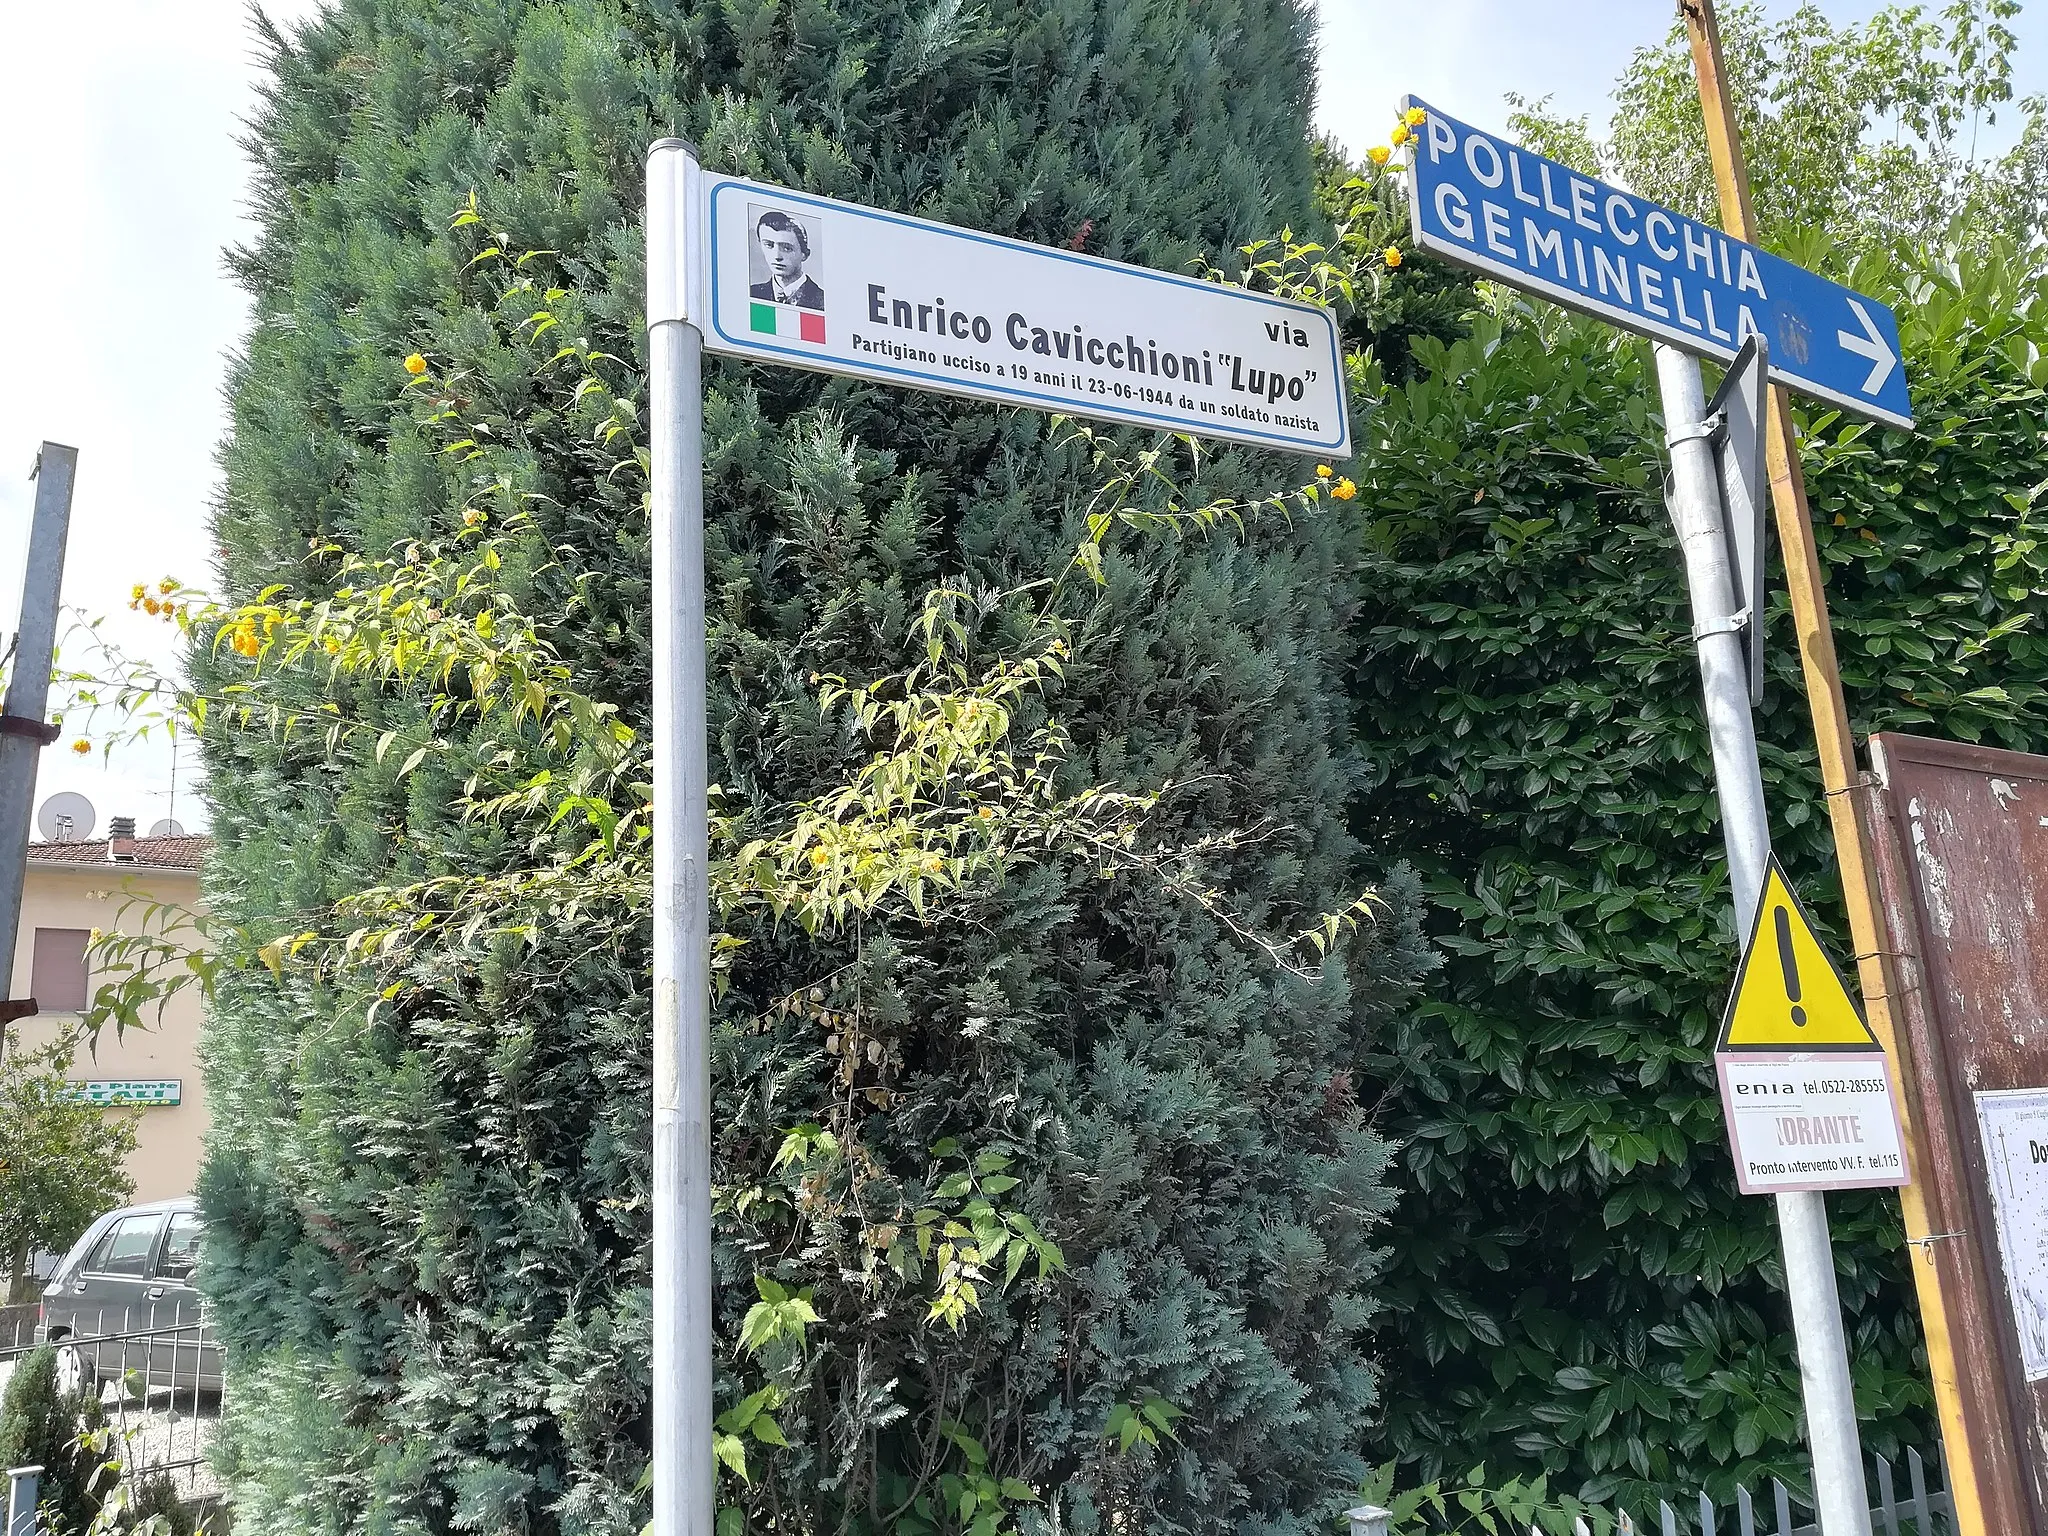 Photo showing: Via dedicata al partigiano "Lupo", Enrico Cavicchioni, nel comune di Vezzano sul Crostolo.